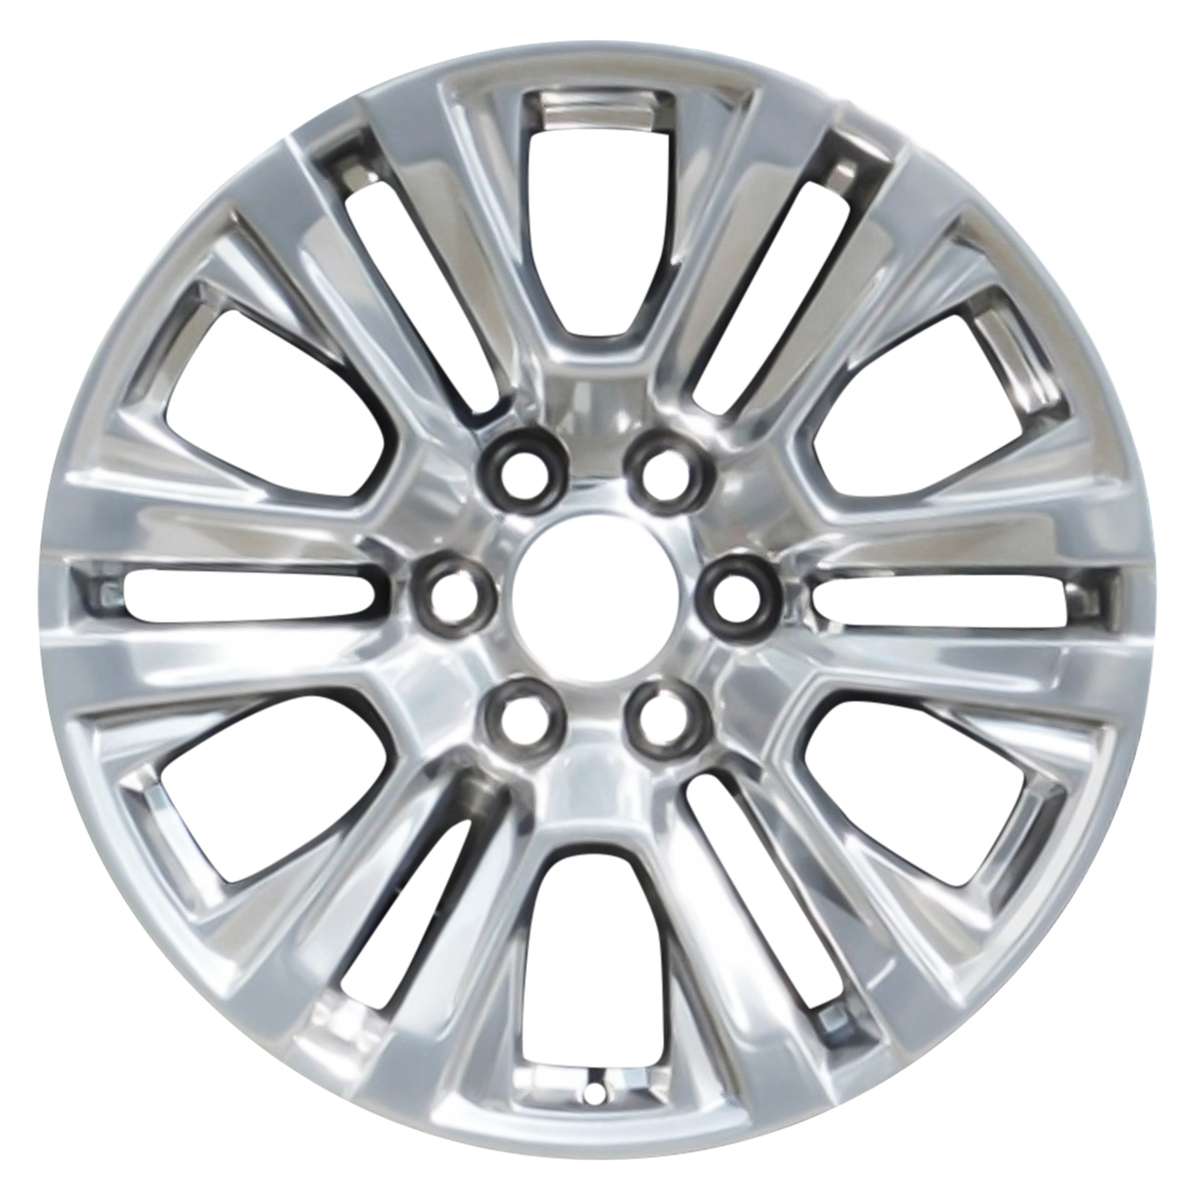 2021 GMC Yukon XL 20" OEM Wheel Rim W5917P